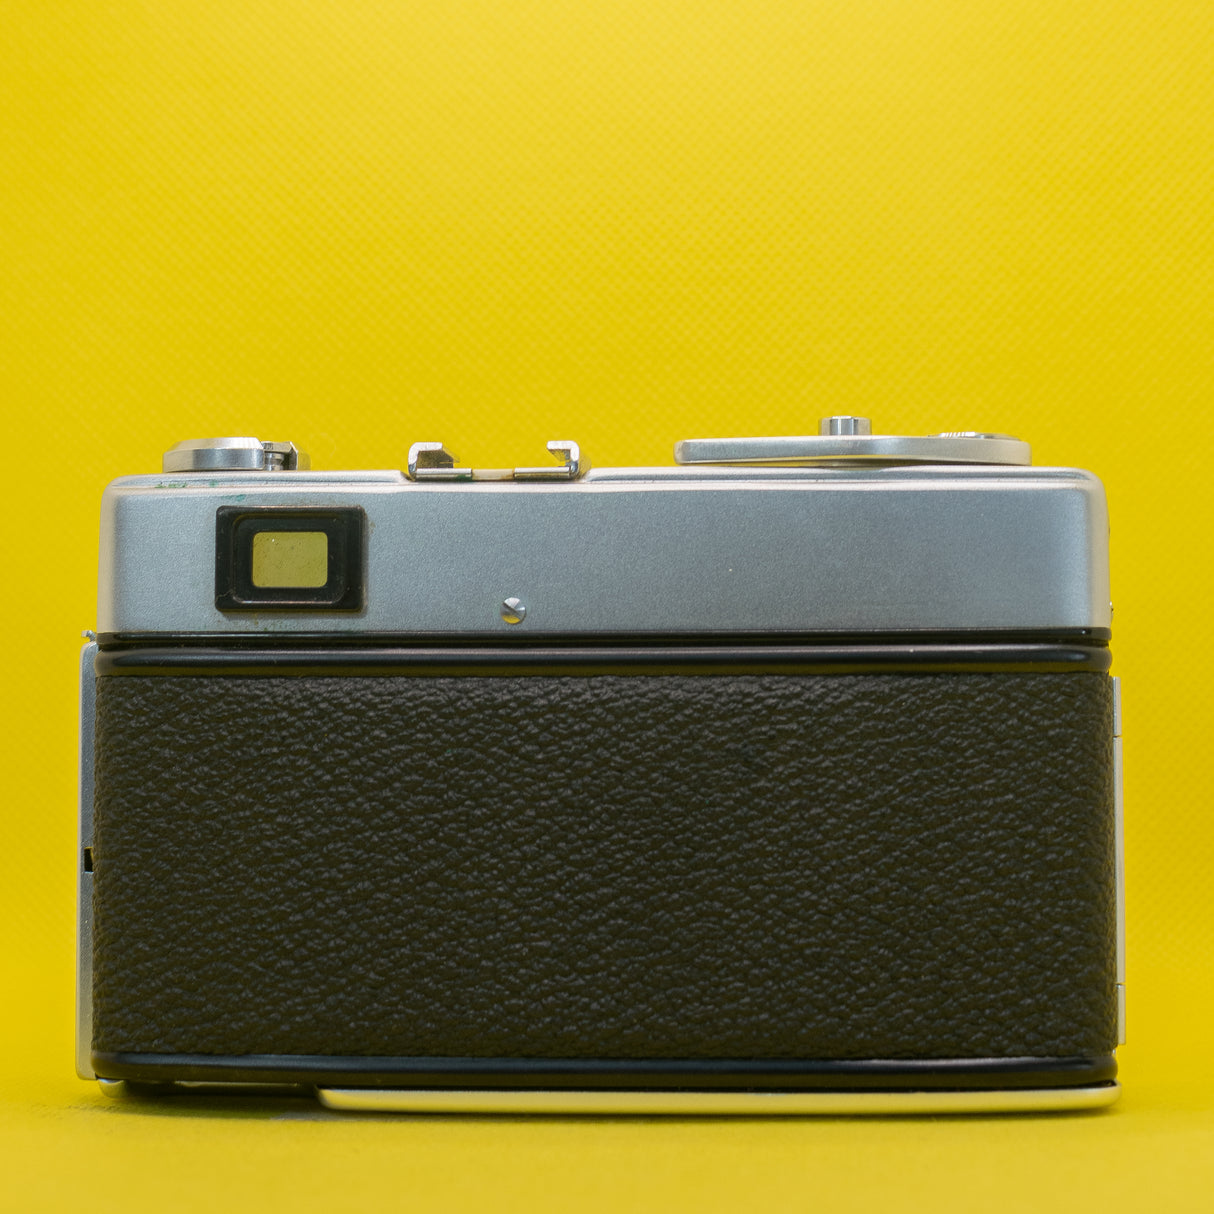 Minolta AL-F - Fotocamera a pellicola 35 mm